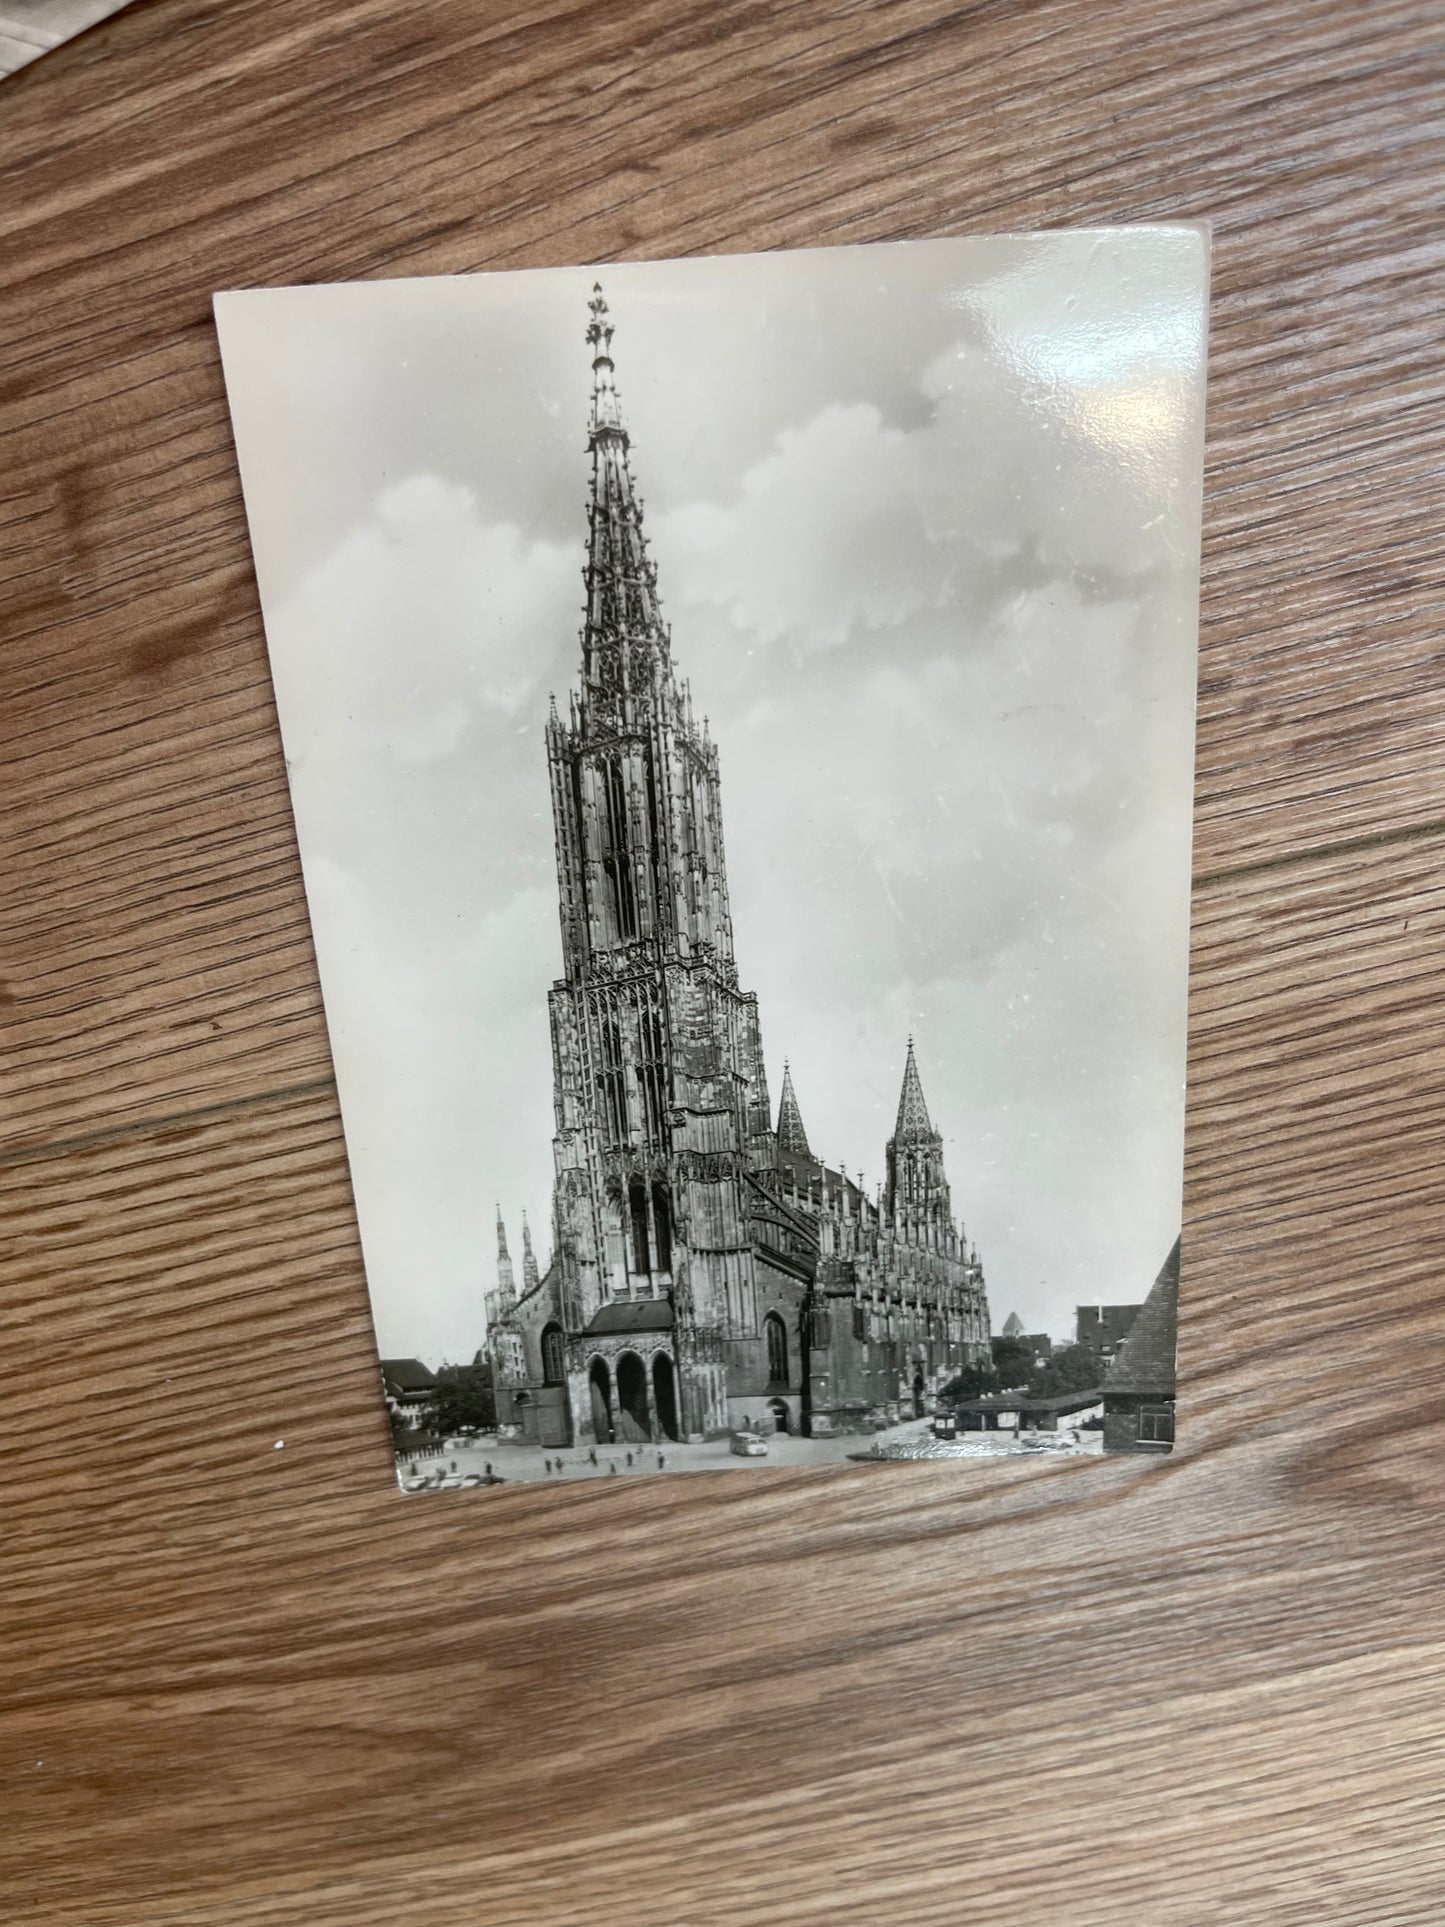 Vintage postcards